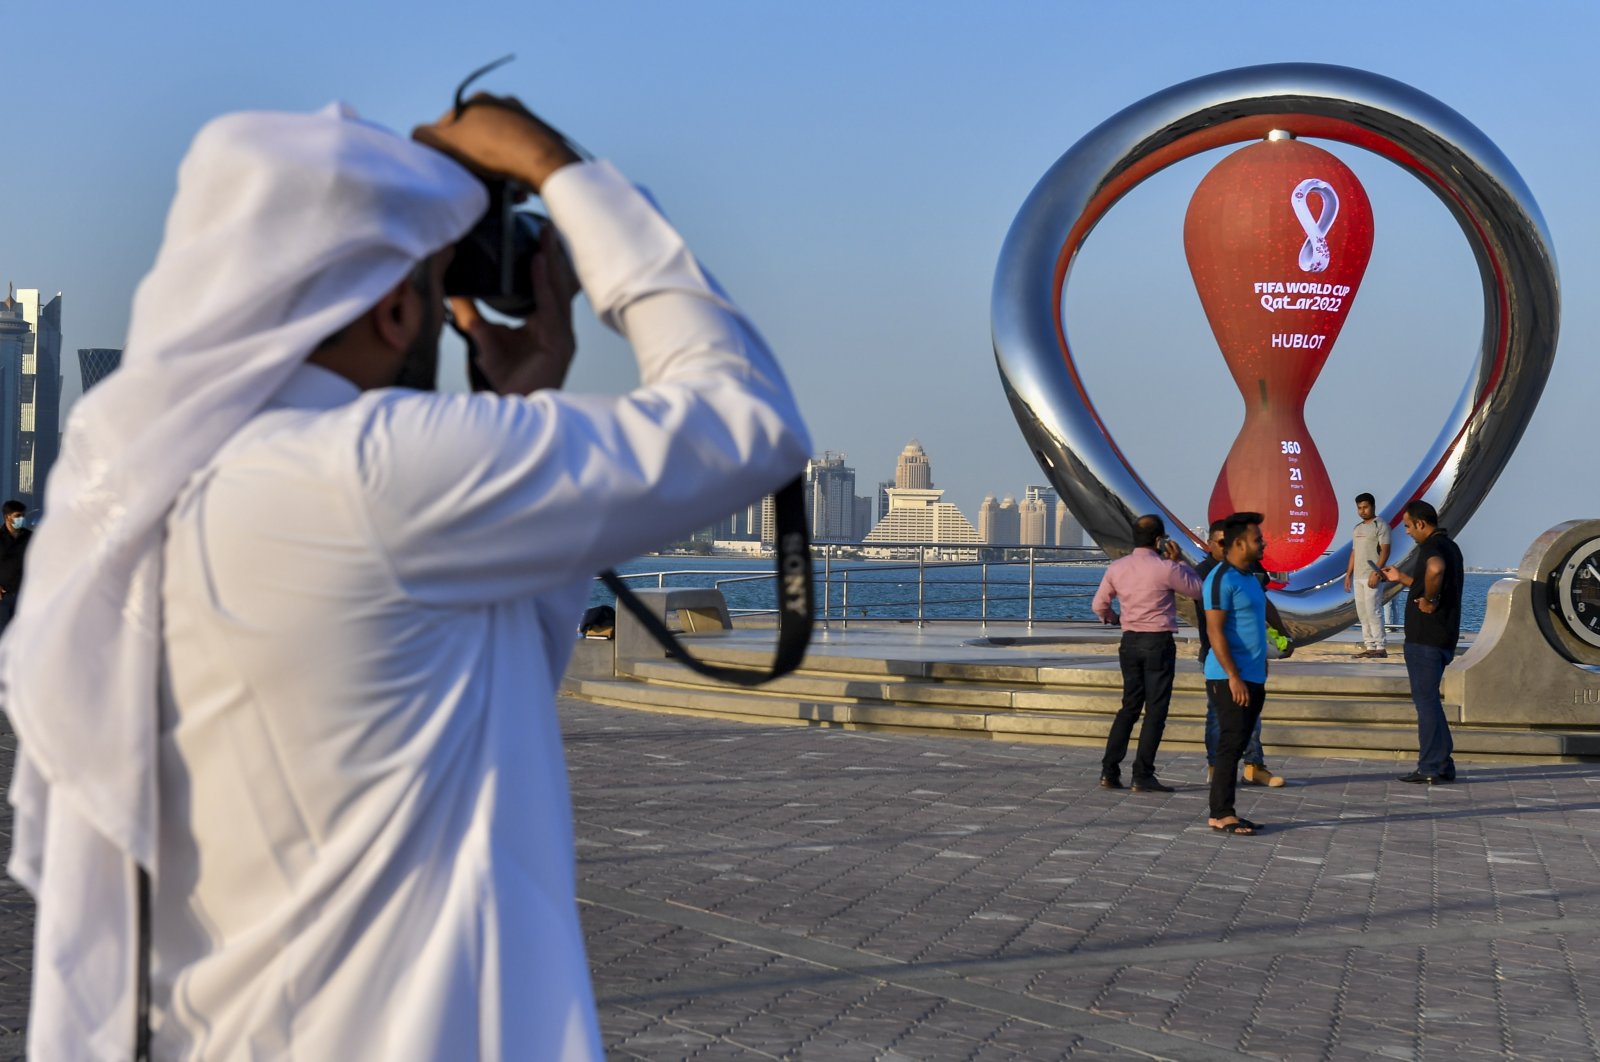 Turki akan membantu Qatar untuk keamanan Piala Dunia dengan 3.000 petugas